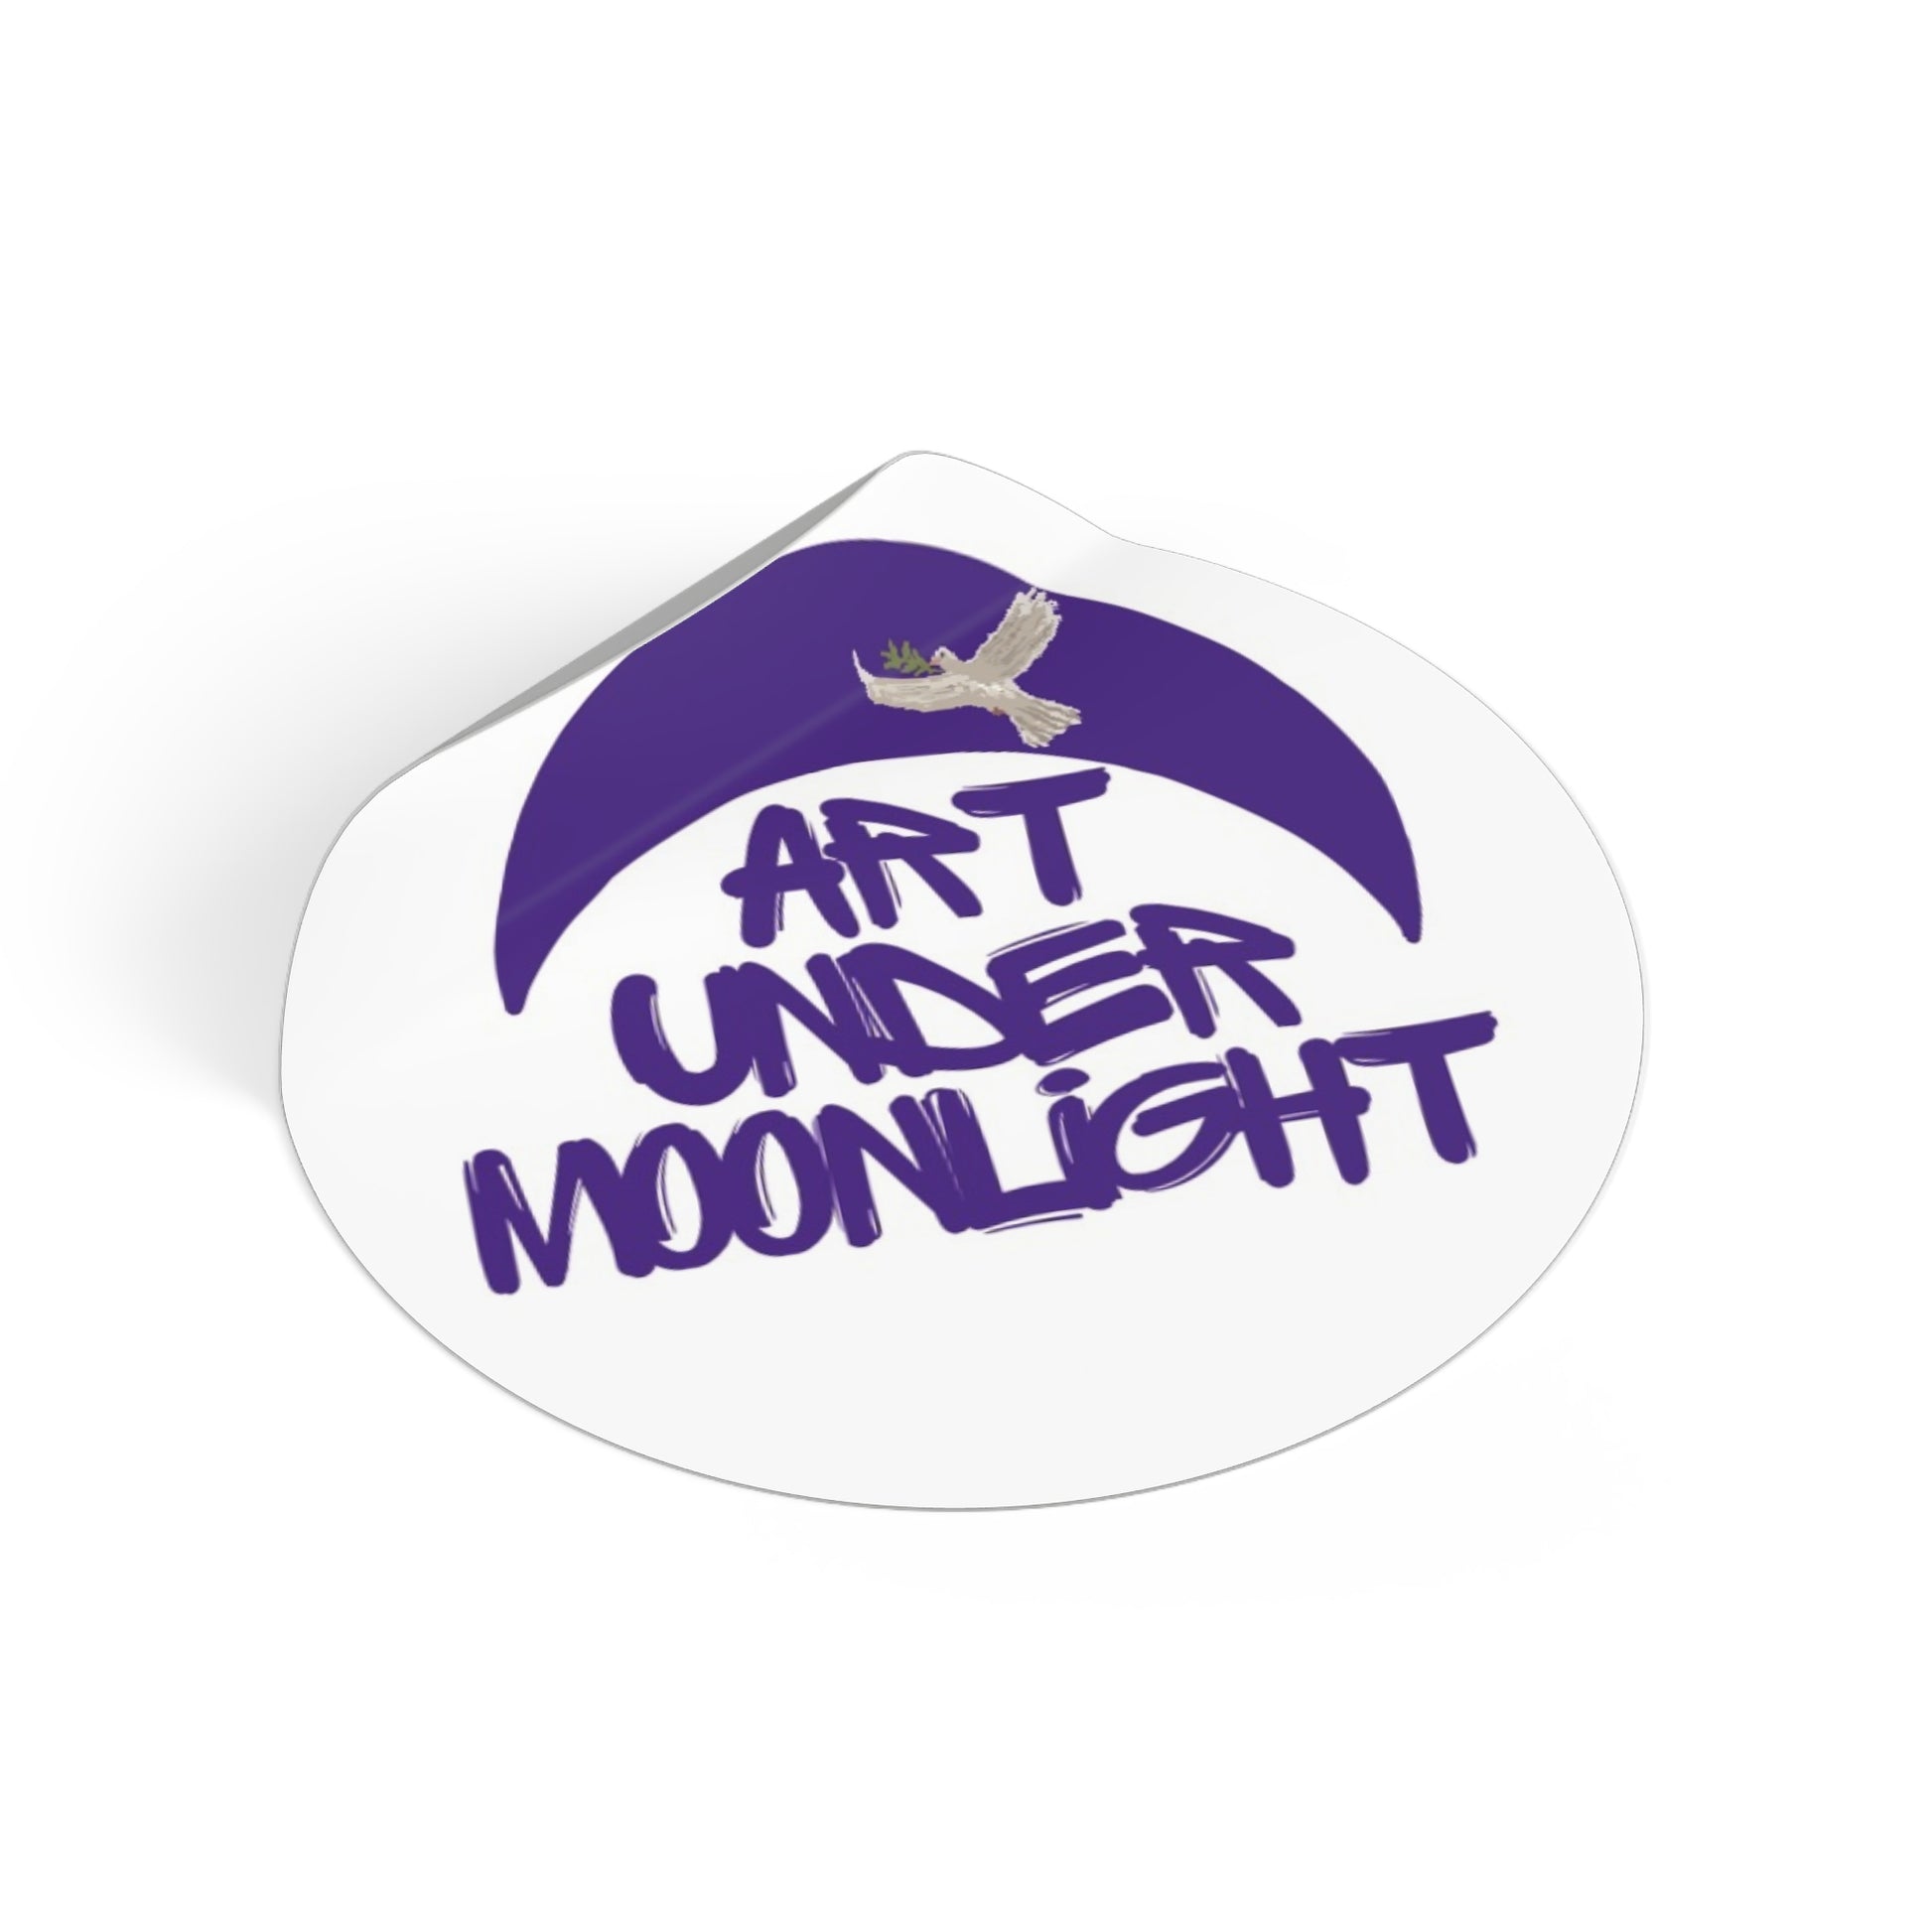 Round Vinyl Brand Stickers - art under moonlight